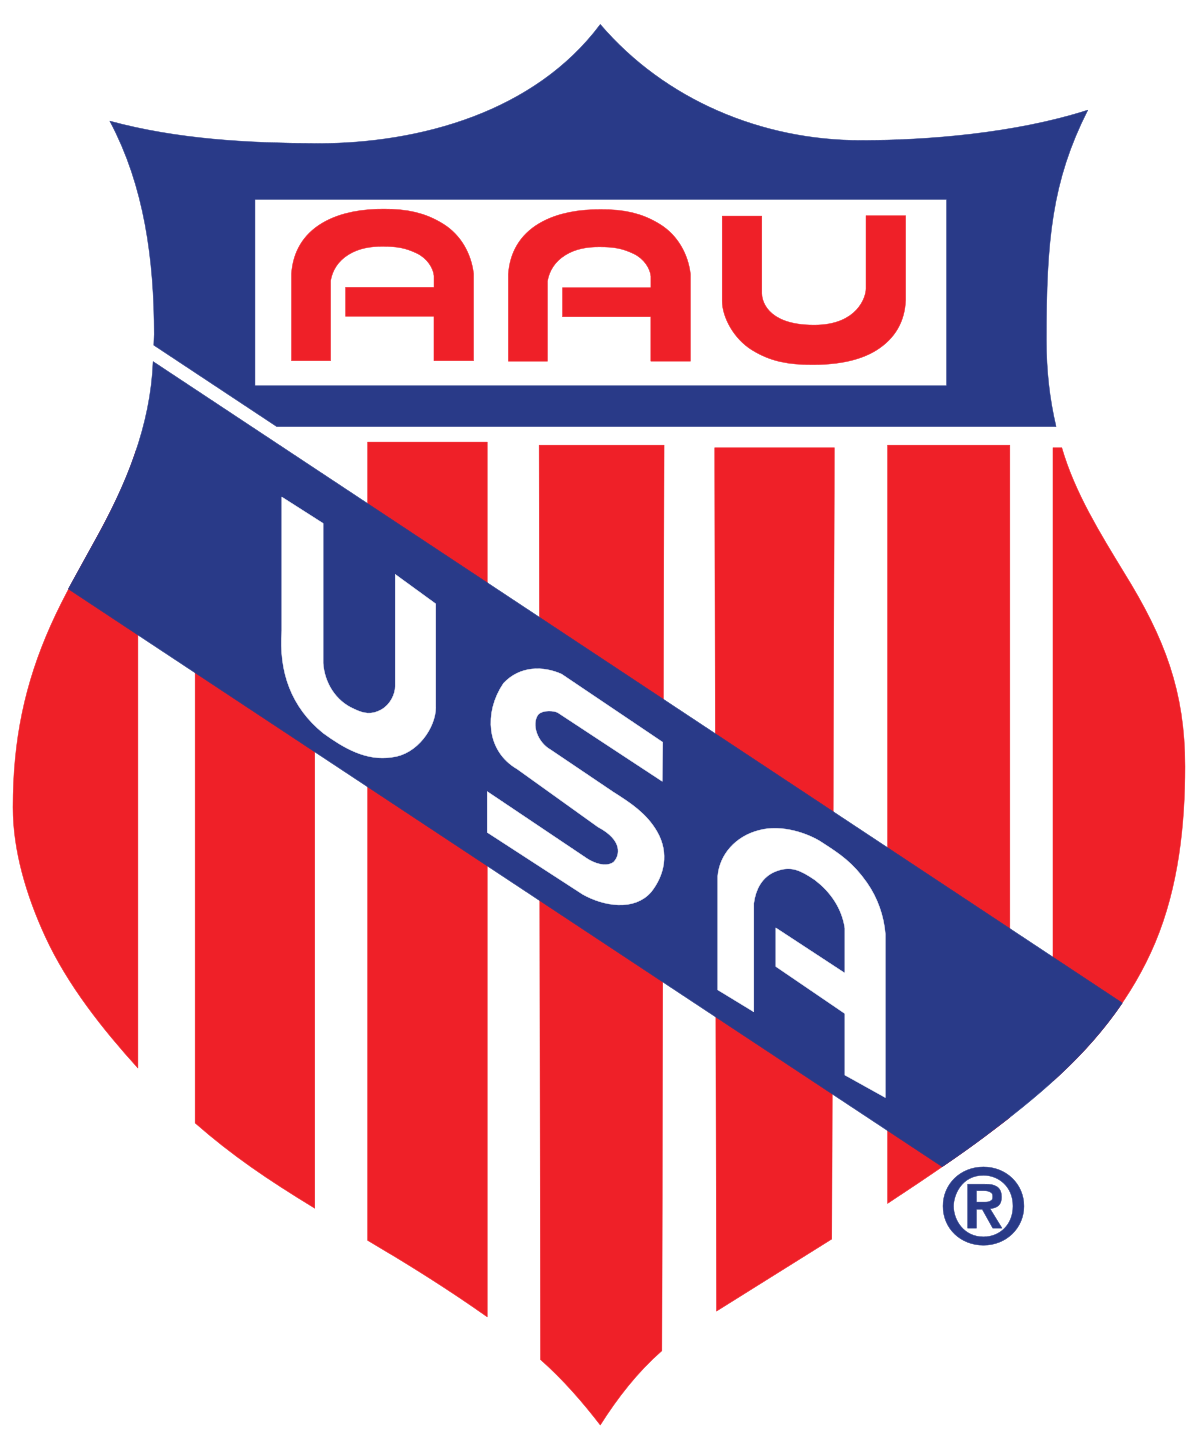 Amateur_Athletic_Union_logo.svg